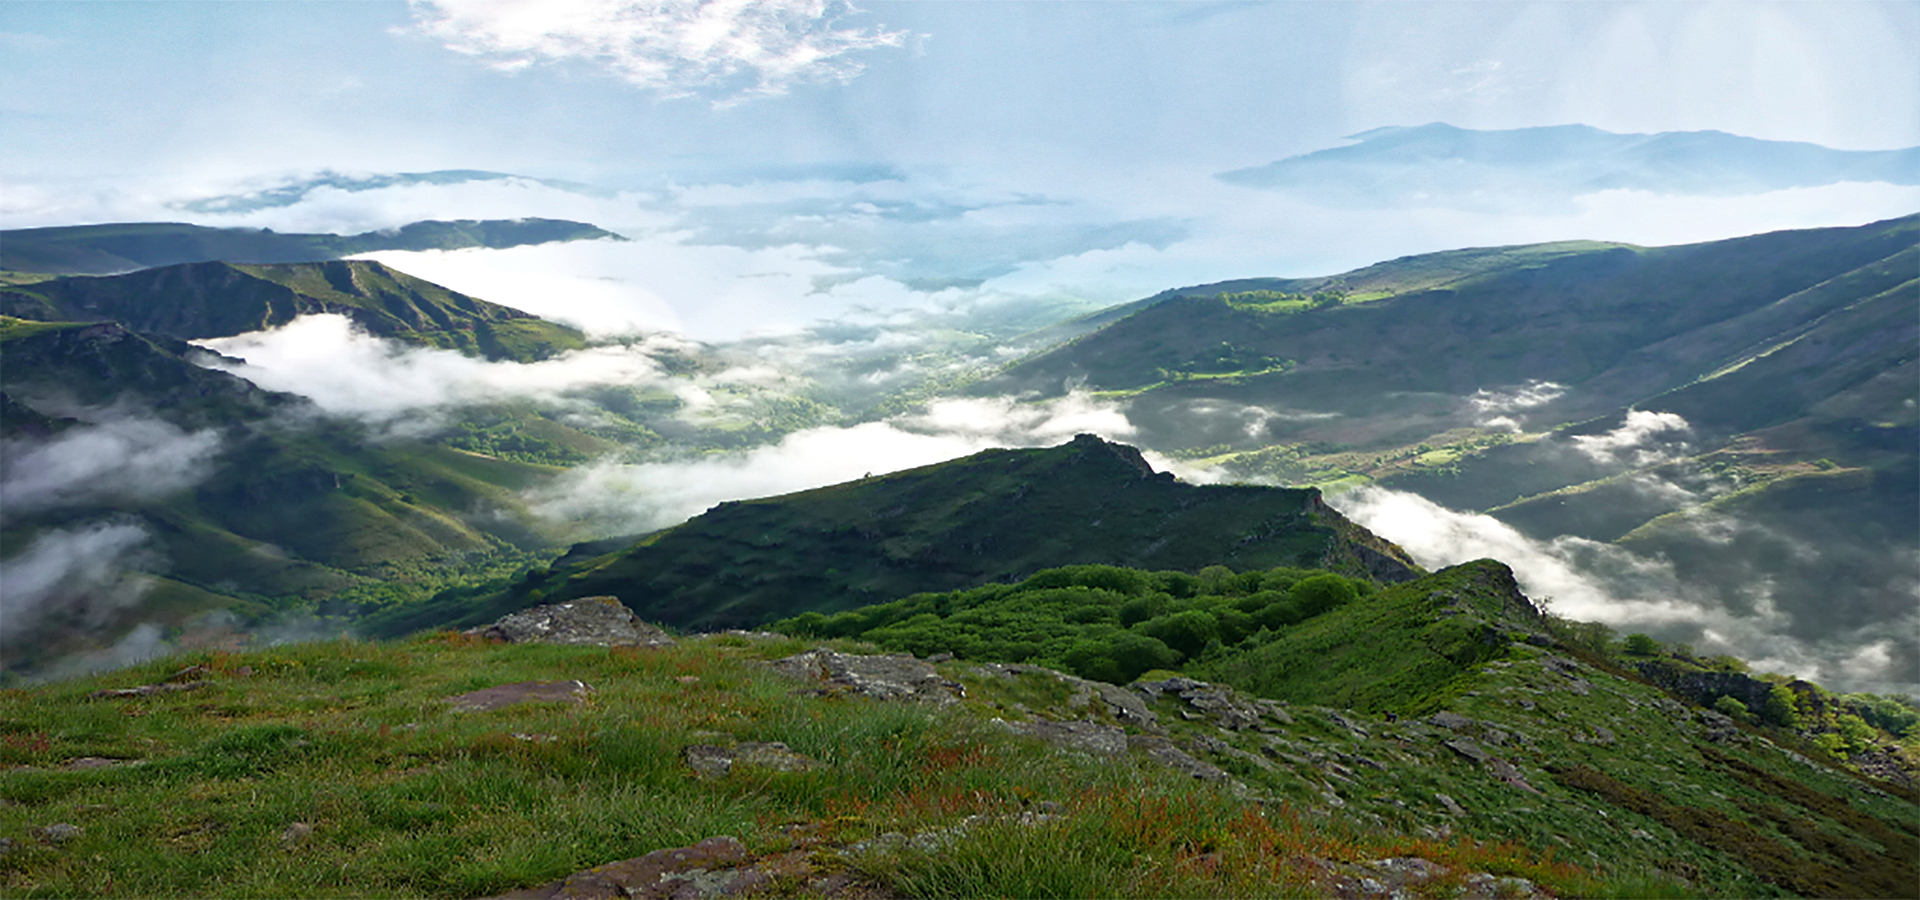 Photo prise par Zeharka d'une montagne basque